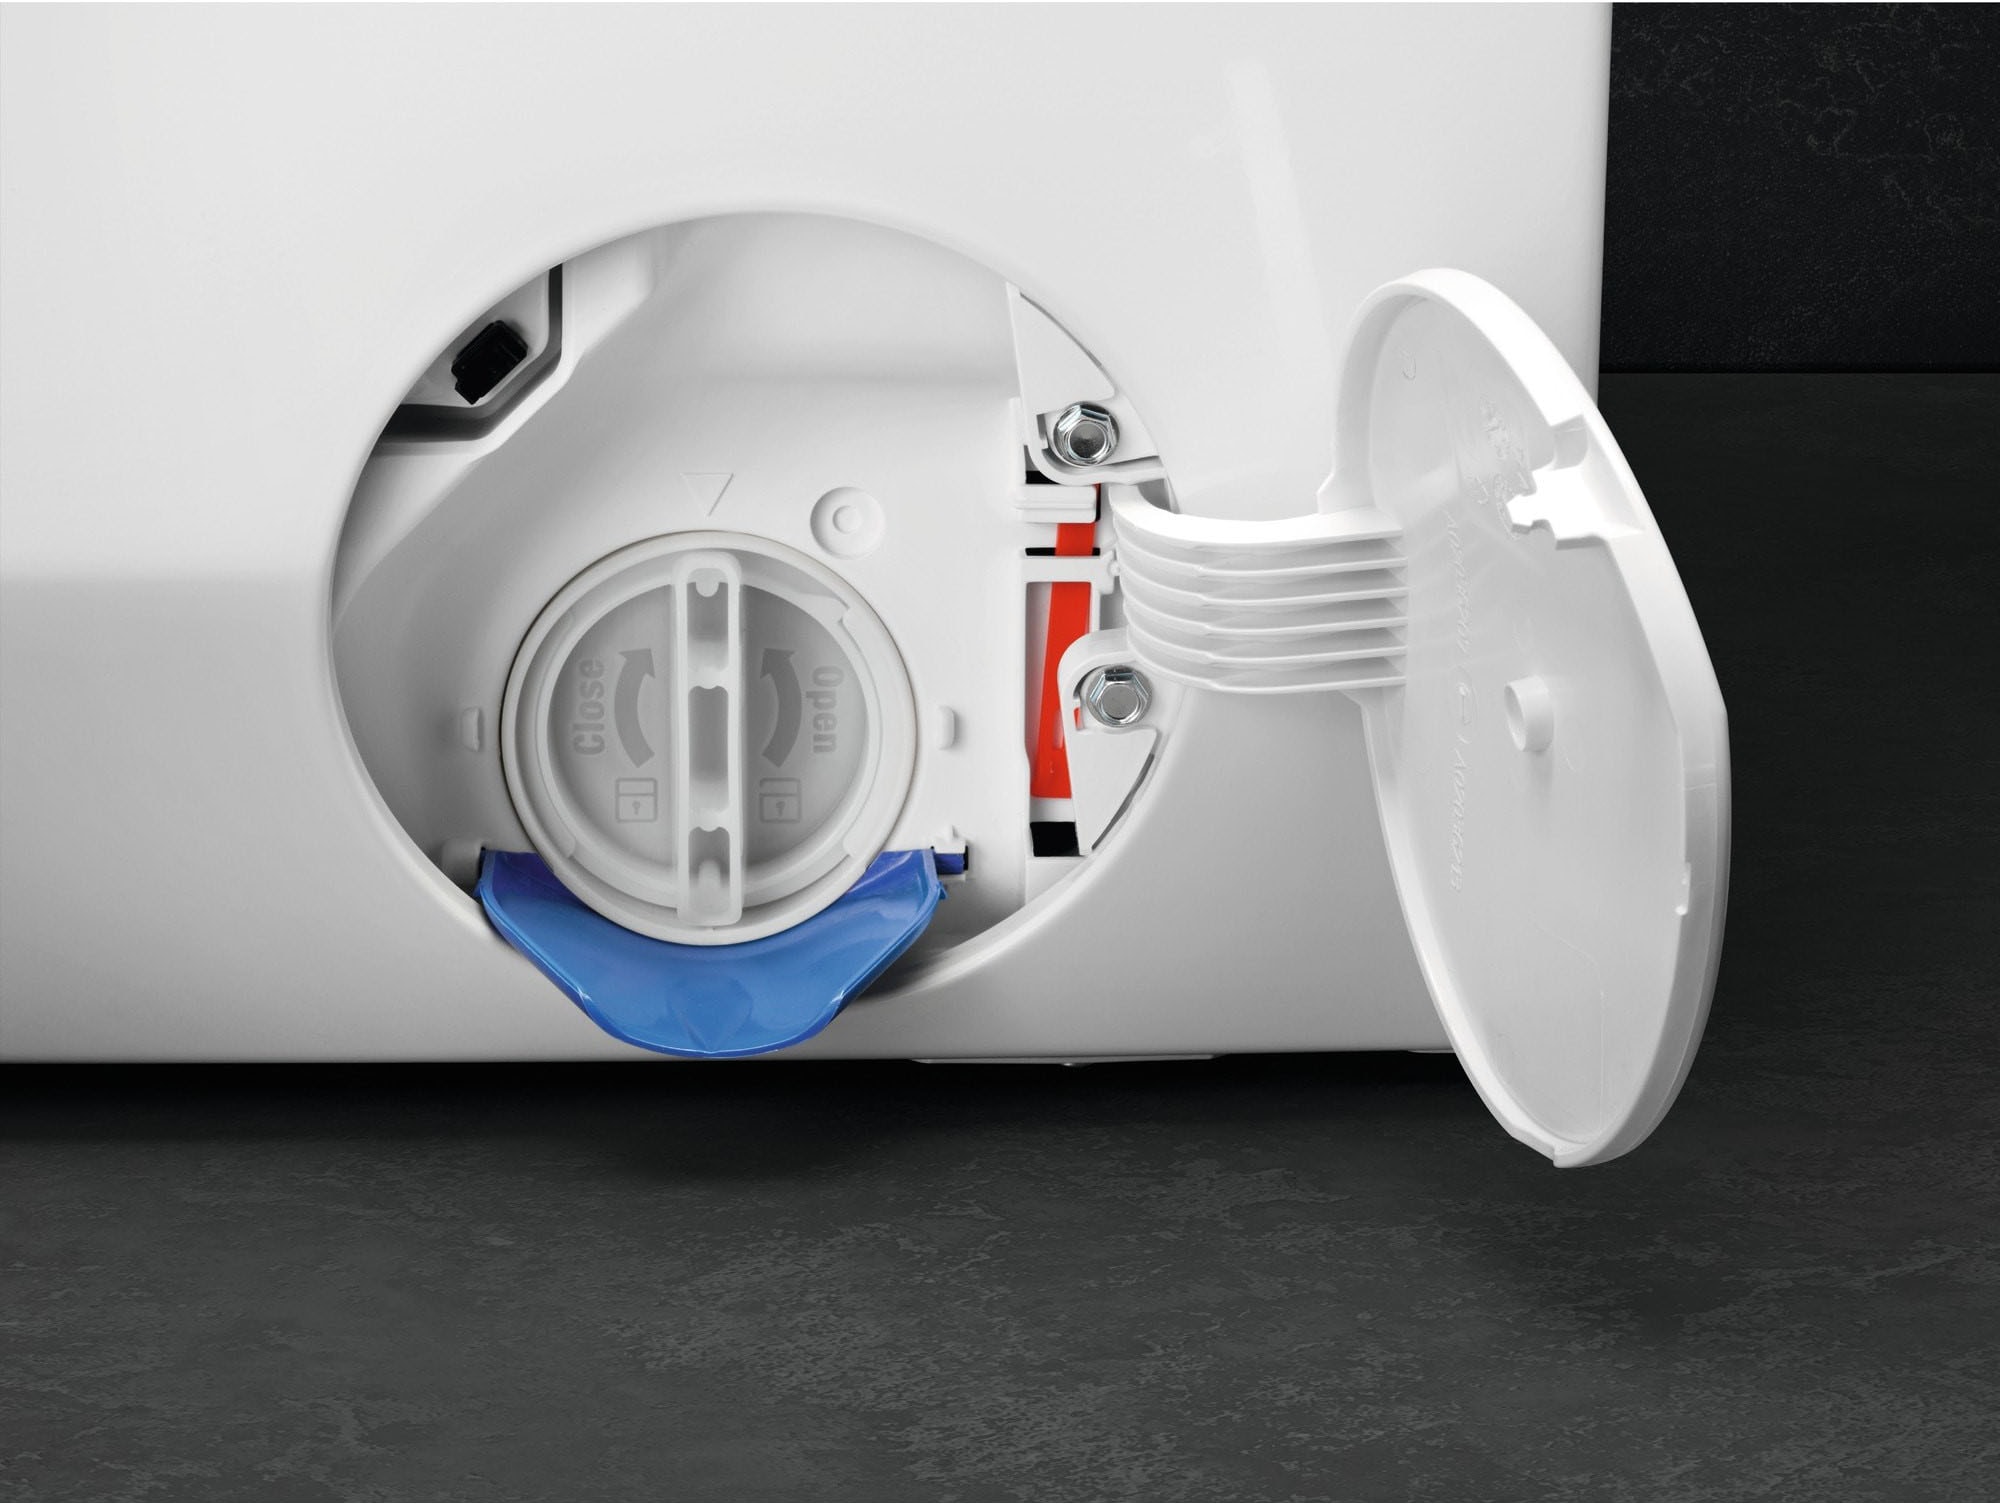 AEG Waschmaschine, LR7E75400, 10 kg, 1400 U/min, ProSteam - Dampf-Programm für 96 % weniger Wasserverbrauch & Wifi